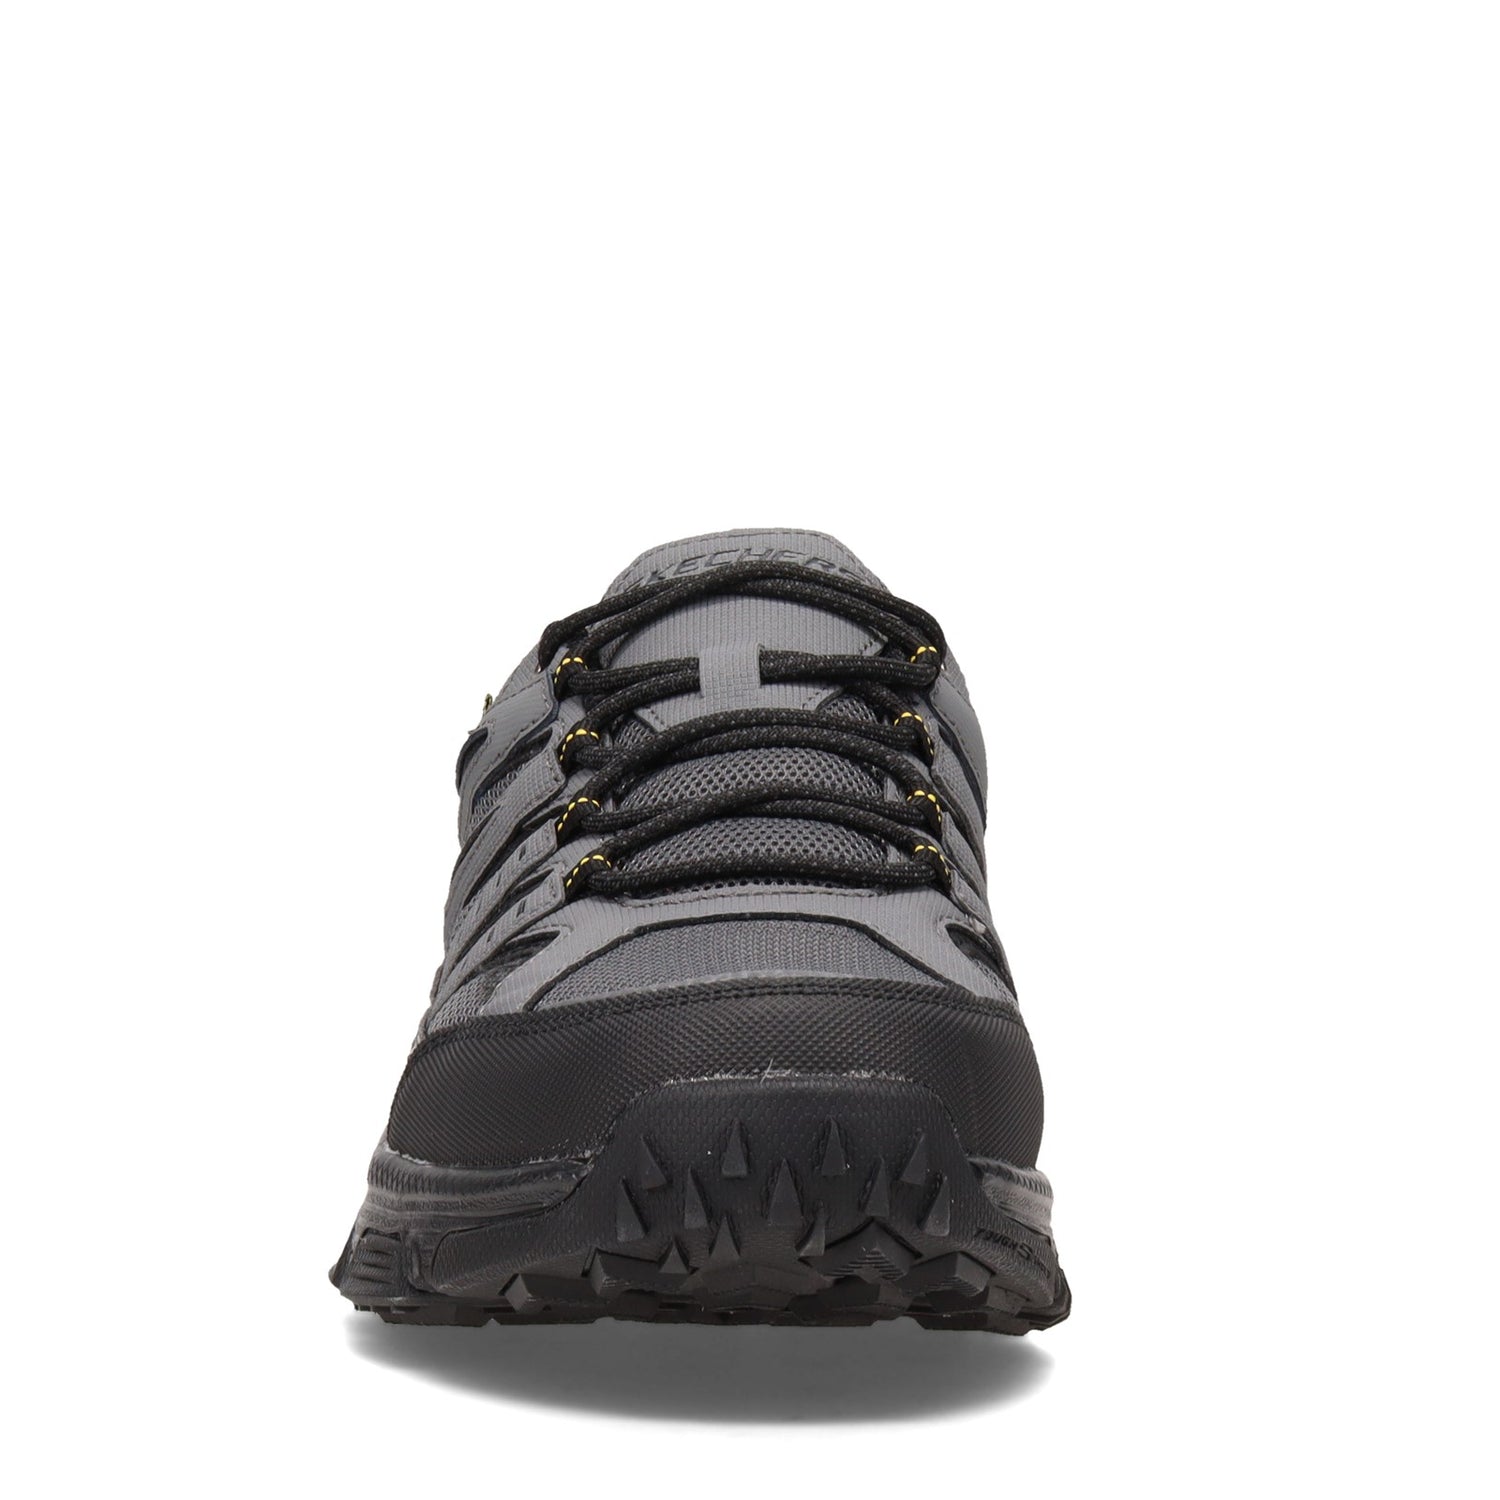 Peltz Shoes  Men's Skechers Skech-Air Envoy Walking Shoe - Wide Width Grey/Black 237214W-GYBK